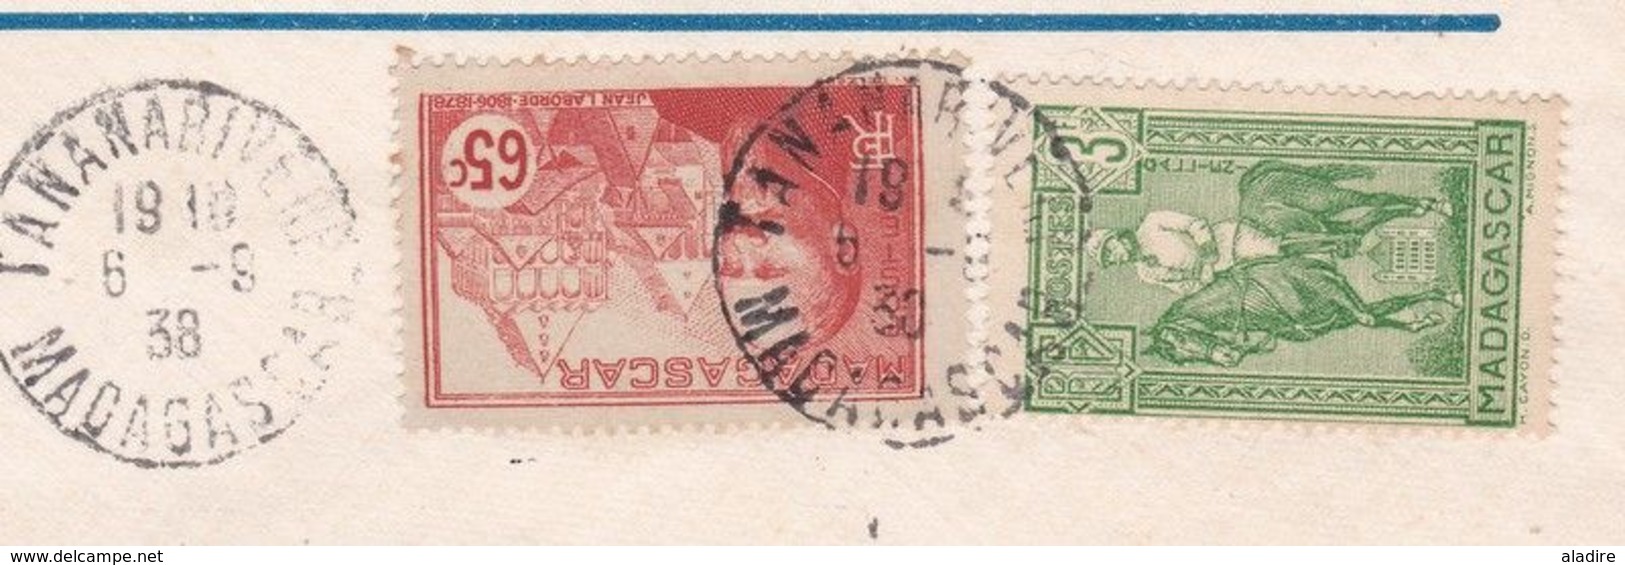 1938 - Enveloppe PAR AVION De Tananarive Vers Paris - Affrt  3f 65 Laborde Et Galiéni - Cad Arrivée - Covers & Documents